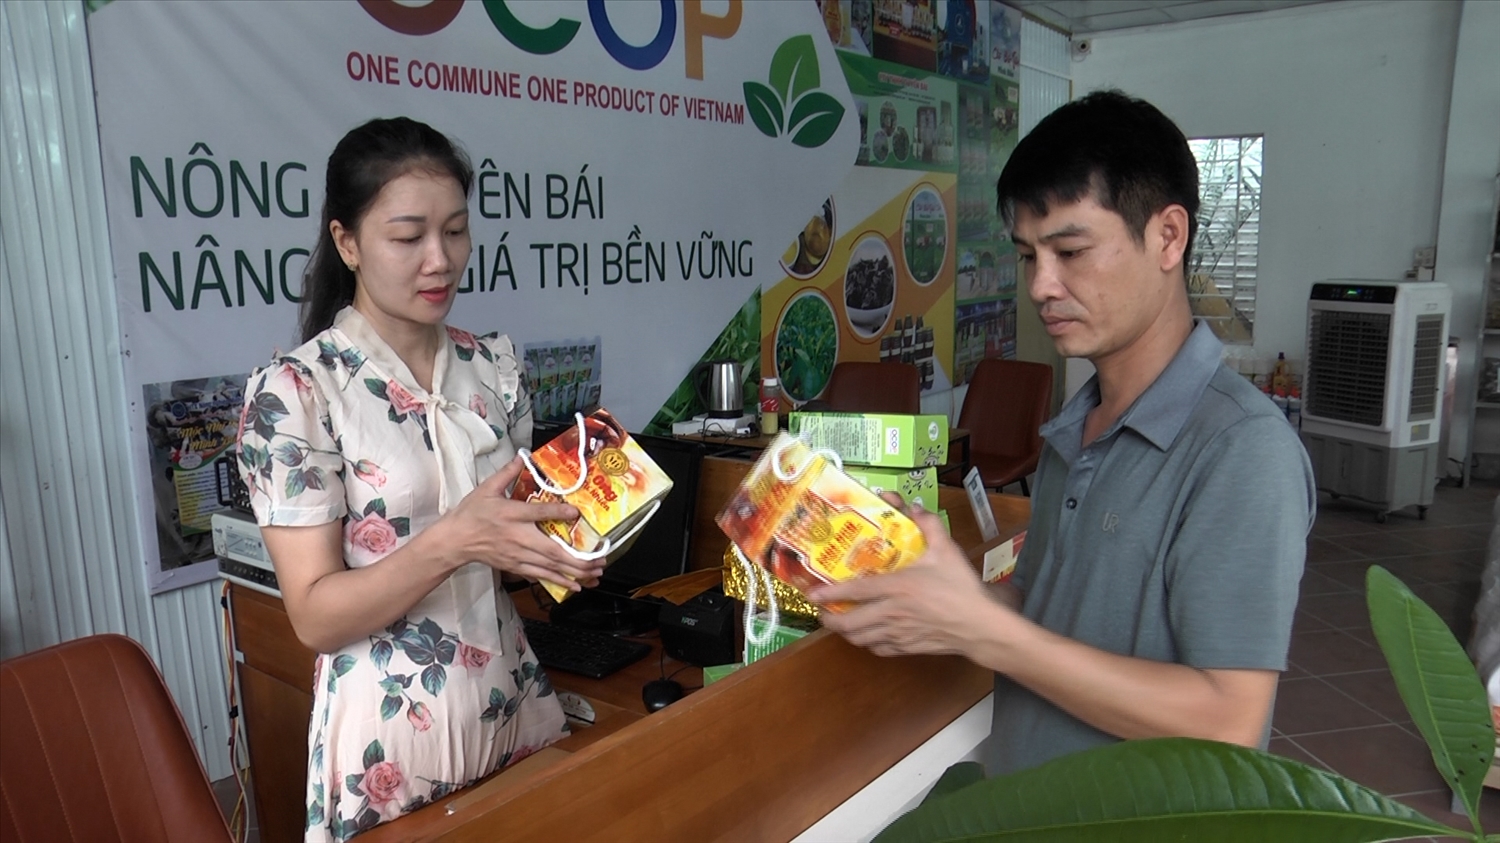 Cửa hàng nông sản của HTX Nông nghiệp Minh Bảo thu hút đông đảo người tiêu dùng.